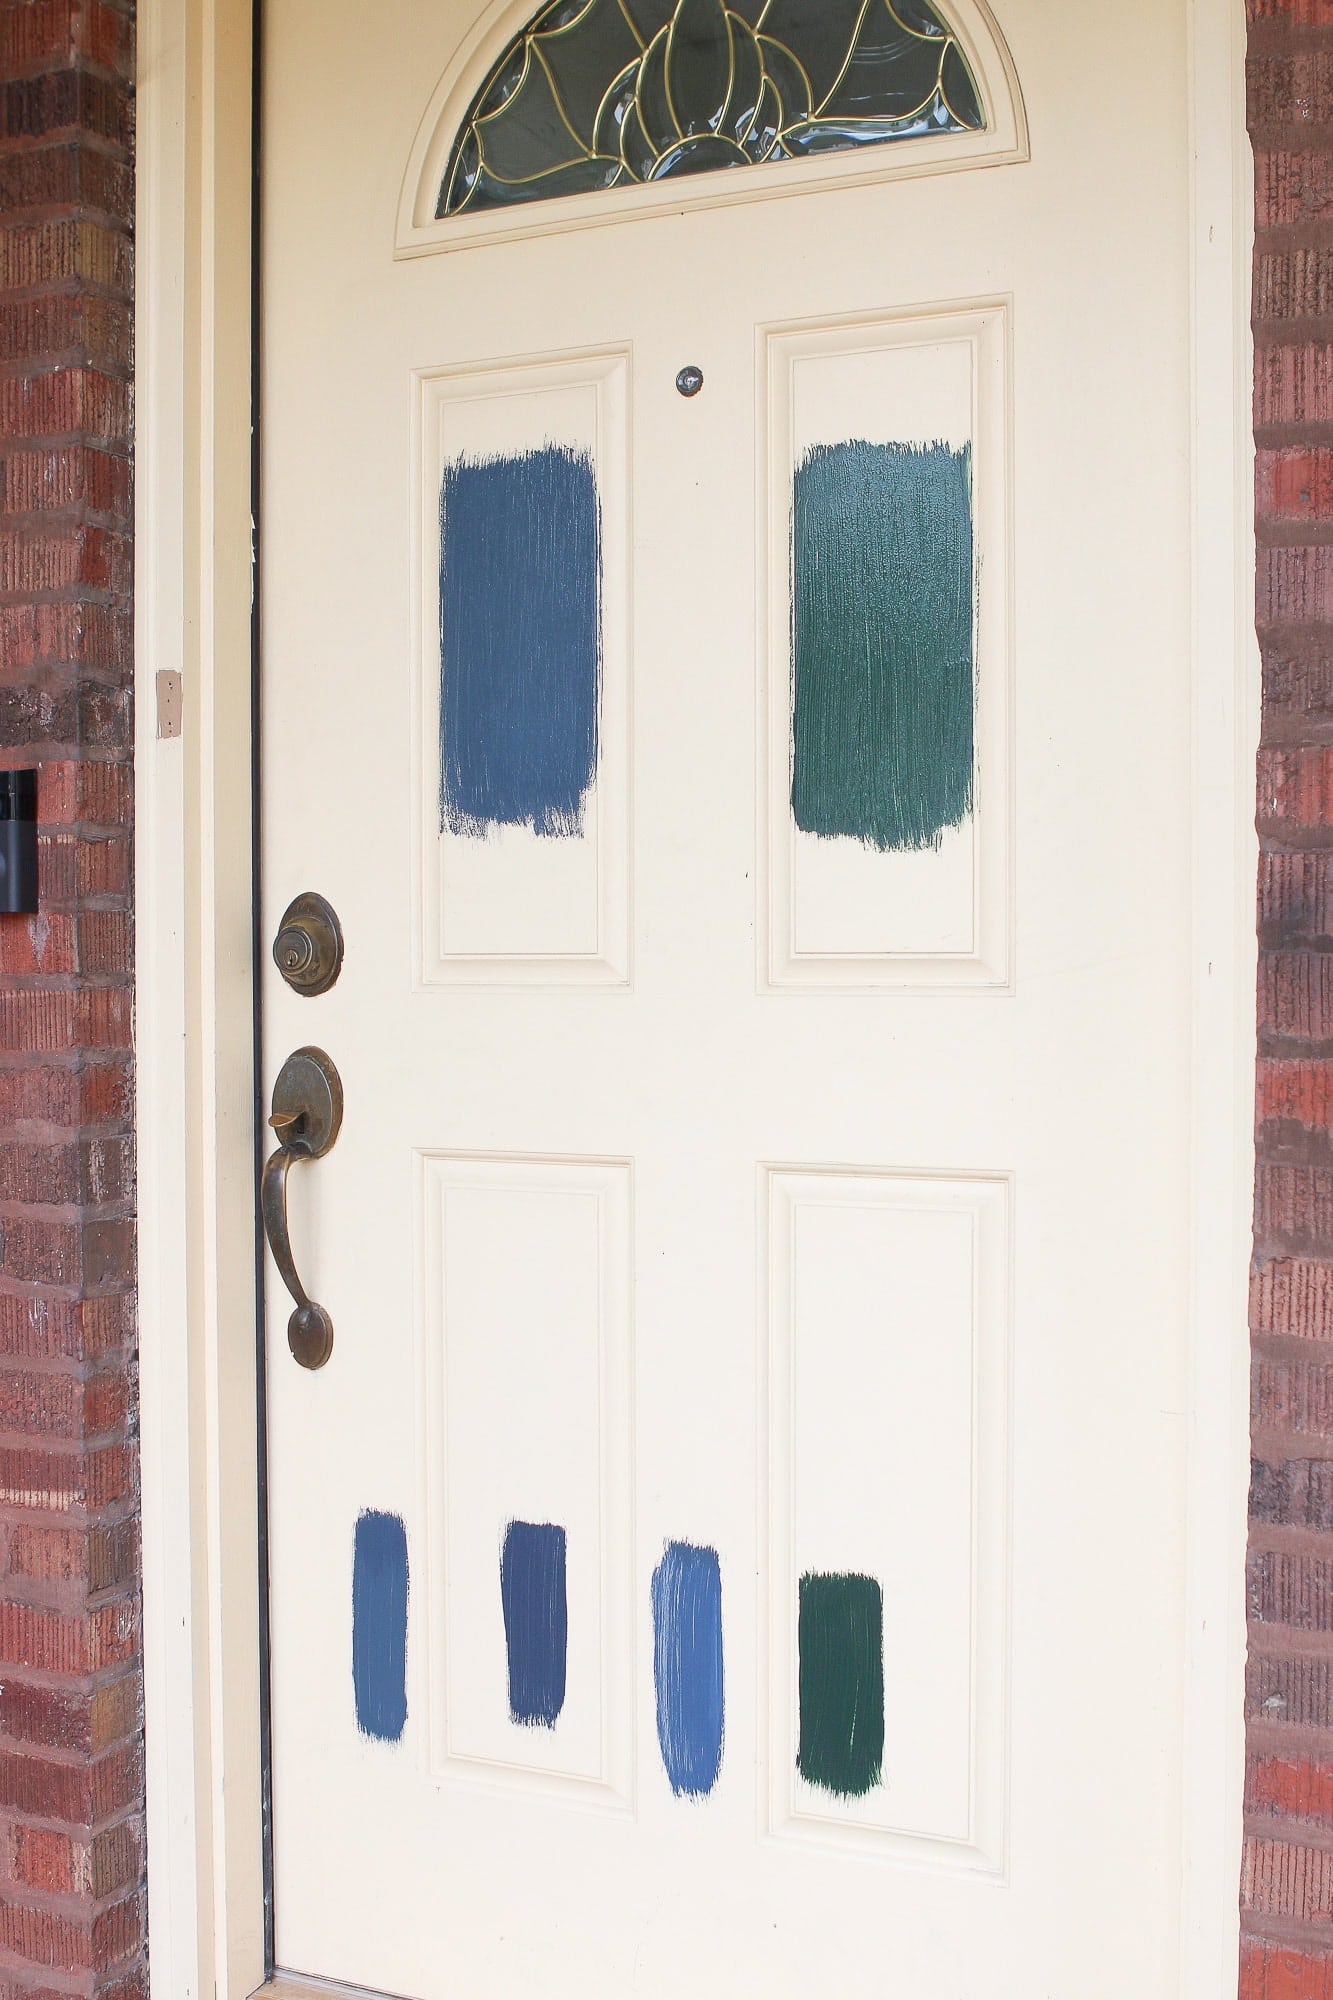 Paint samples on the door